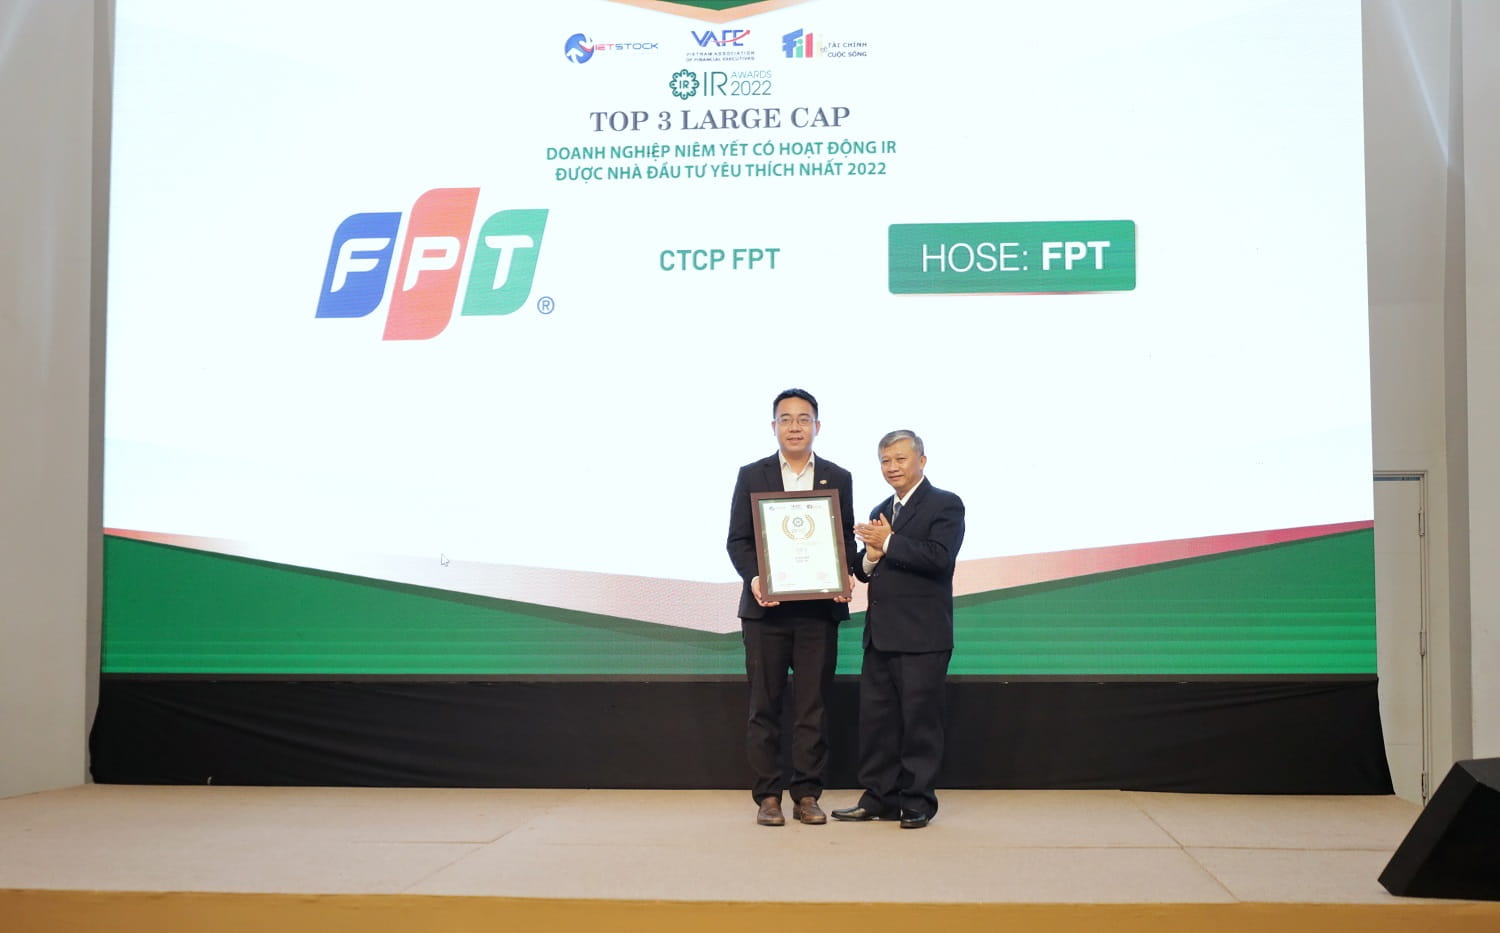 Đại diện Tập đoàn FPT, ông Võ Đặng Phát Giám đốc Marketing và Truyền thông nhận giải Top 3 doanh nghiệp niêm yết có hoạt động IR được nhà đầu tư yêu thích nhất năm 2022